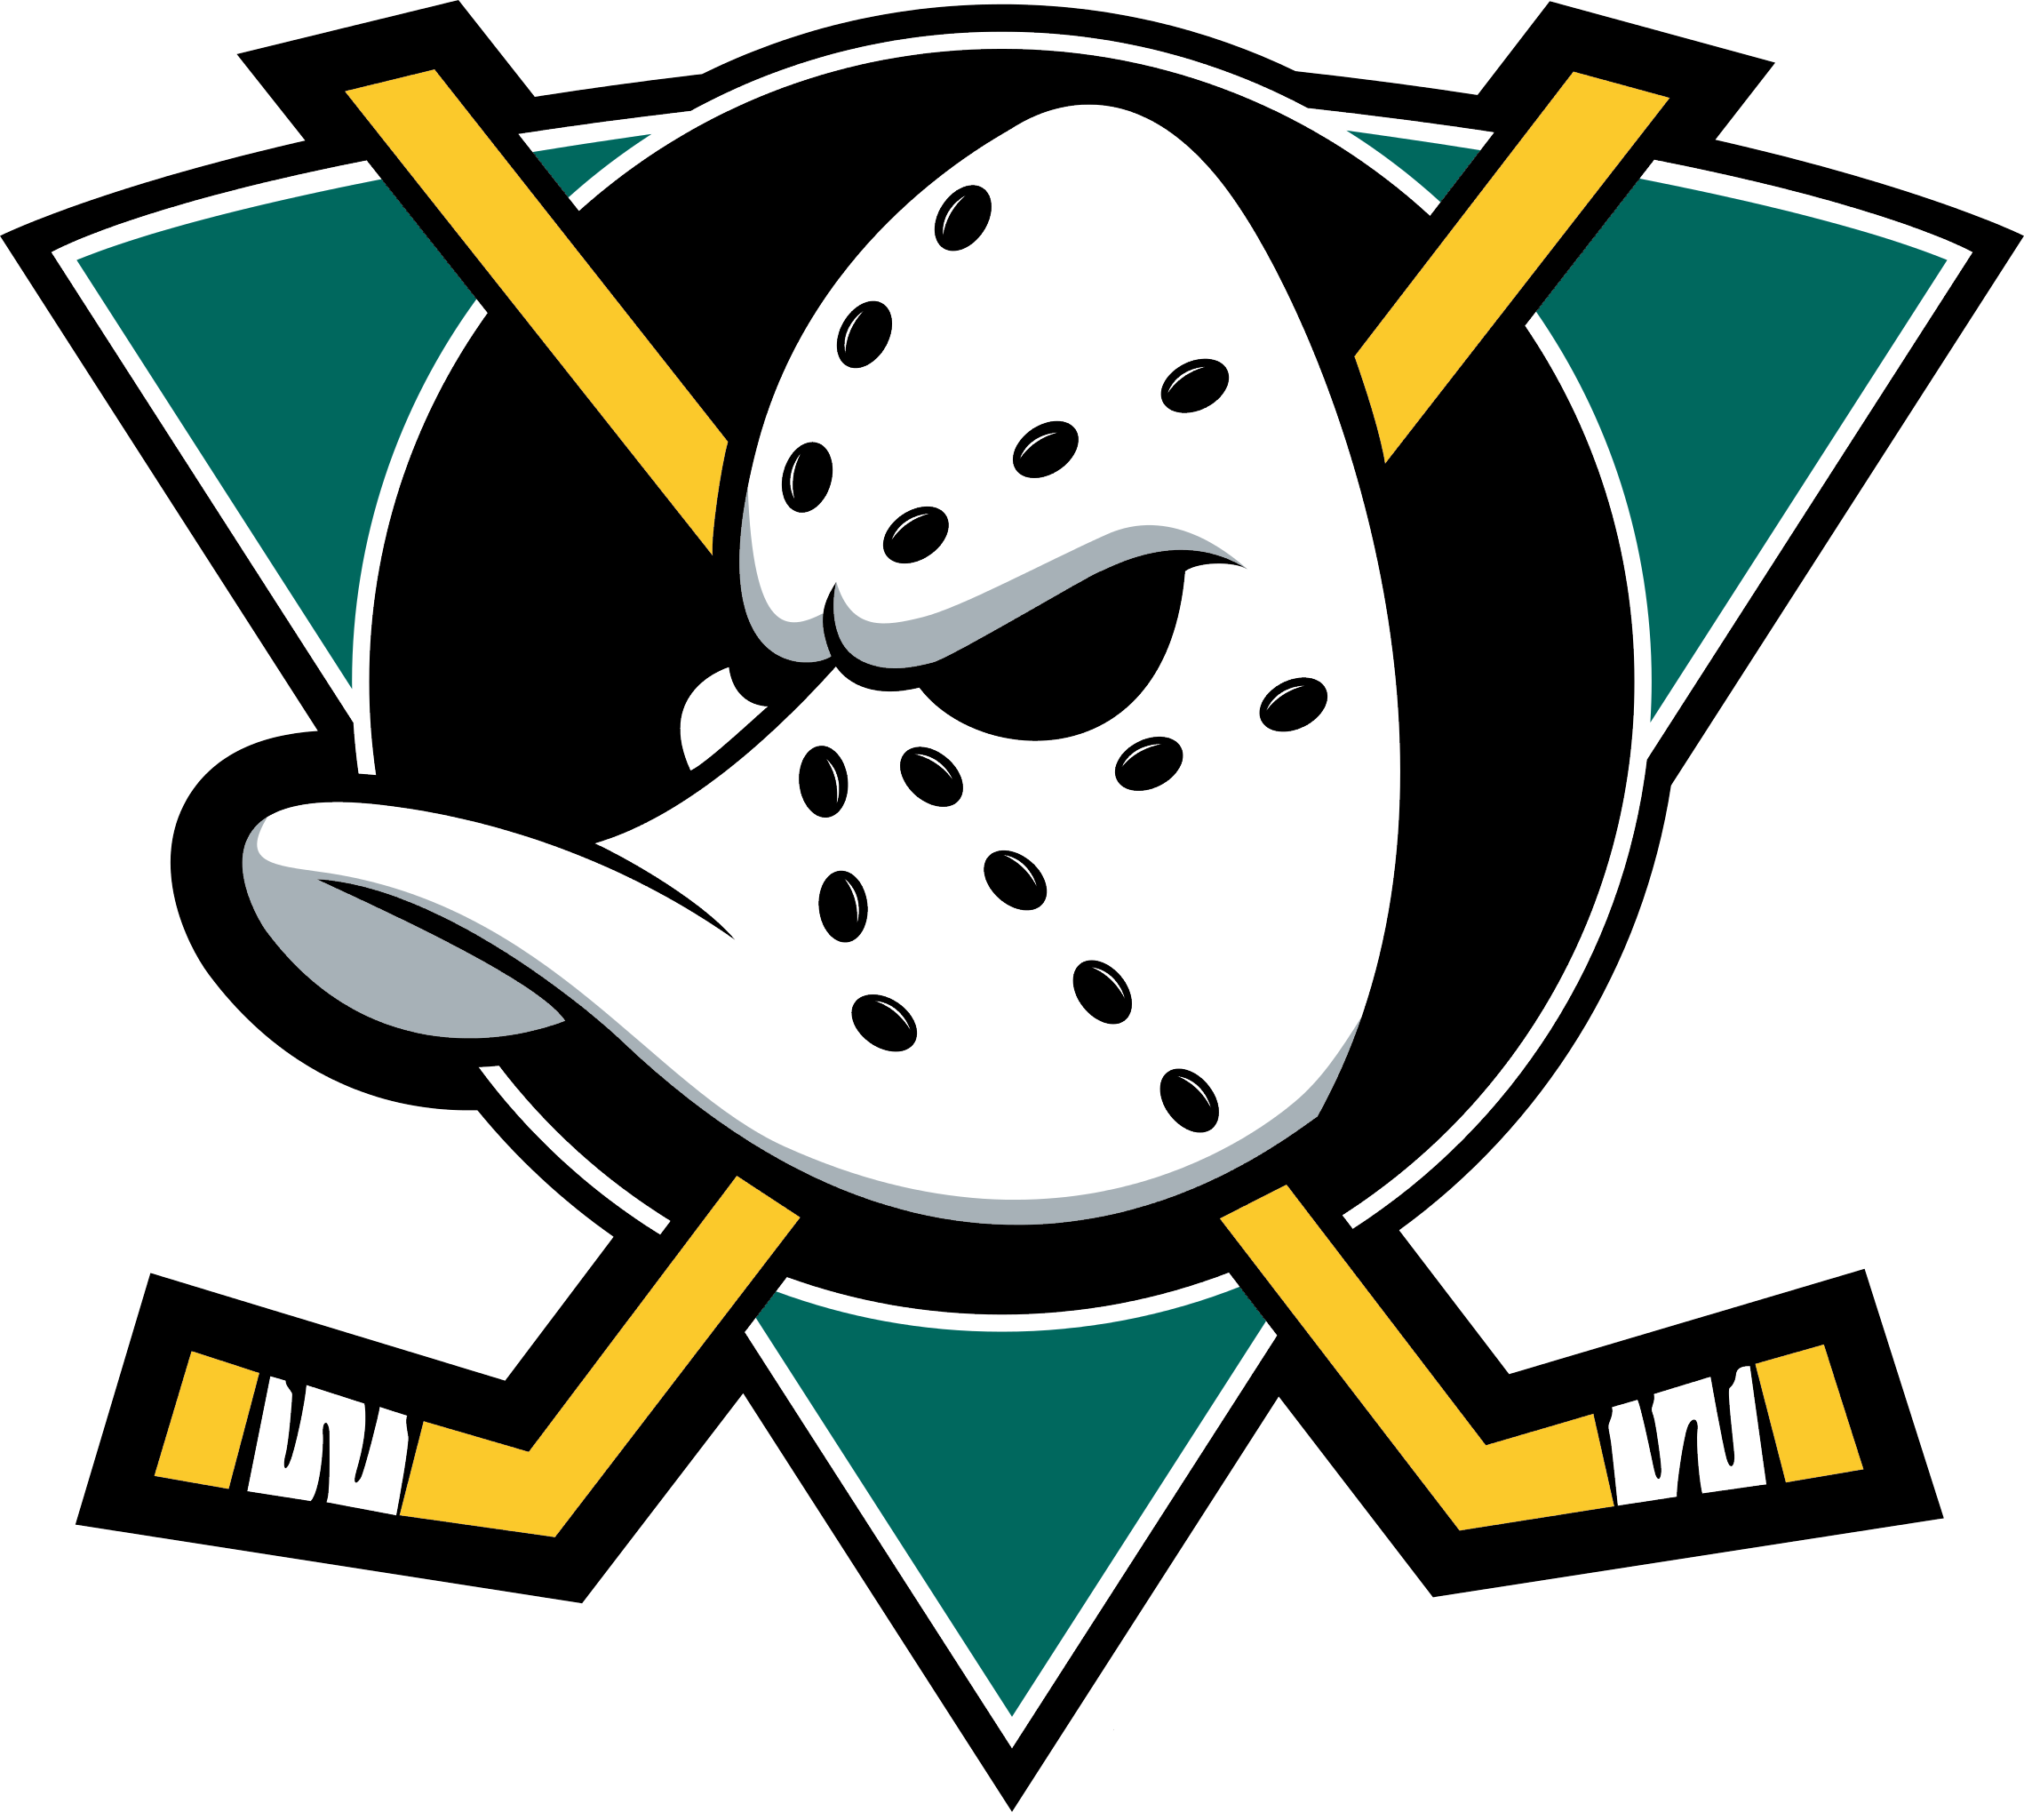 NHL - Anaheim Ducks